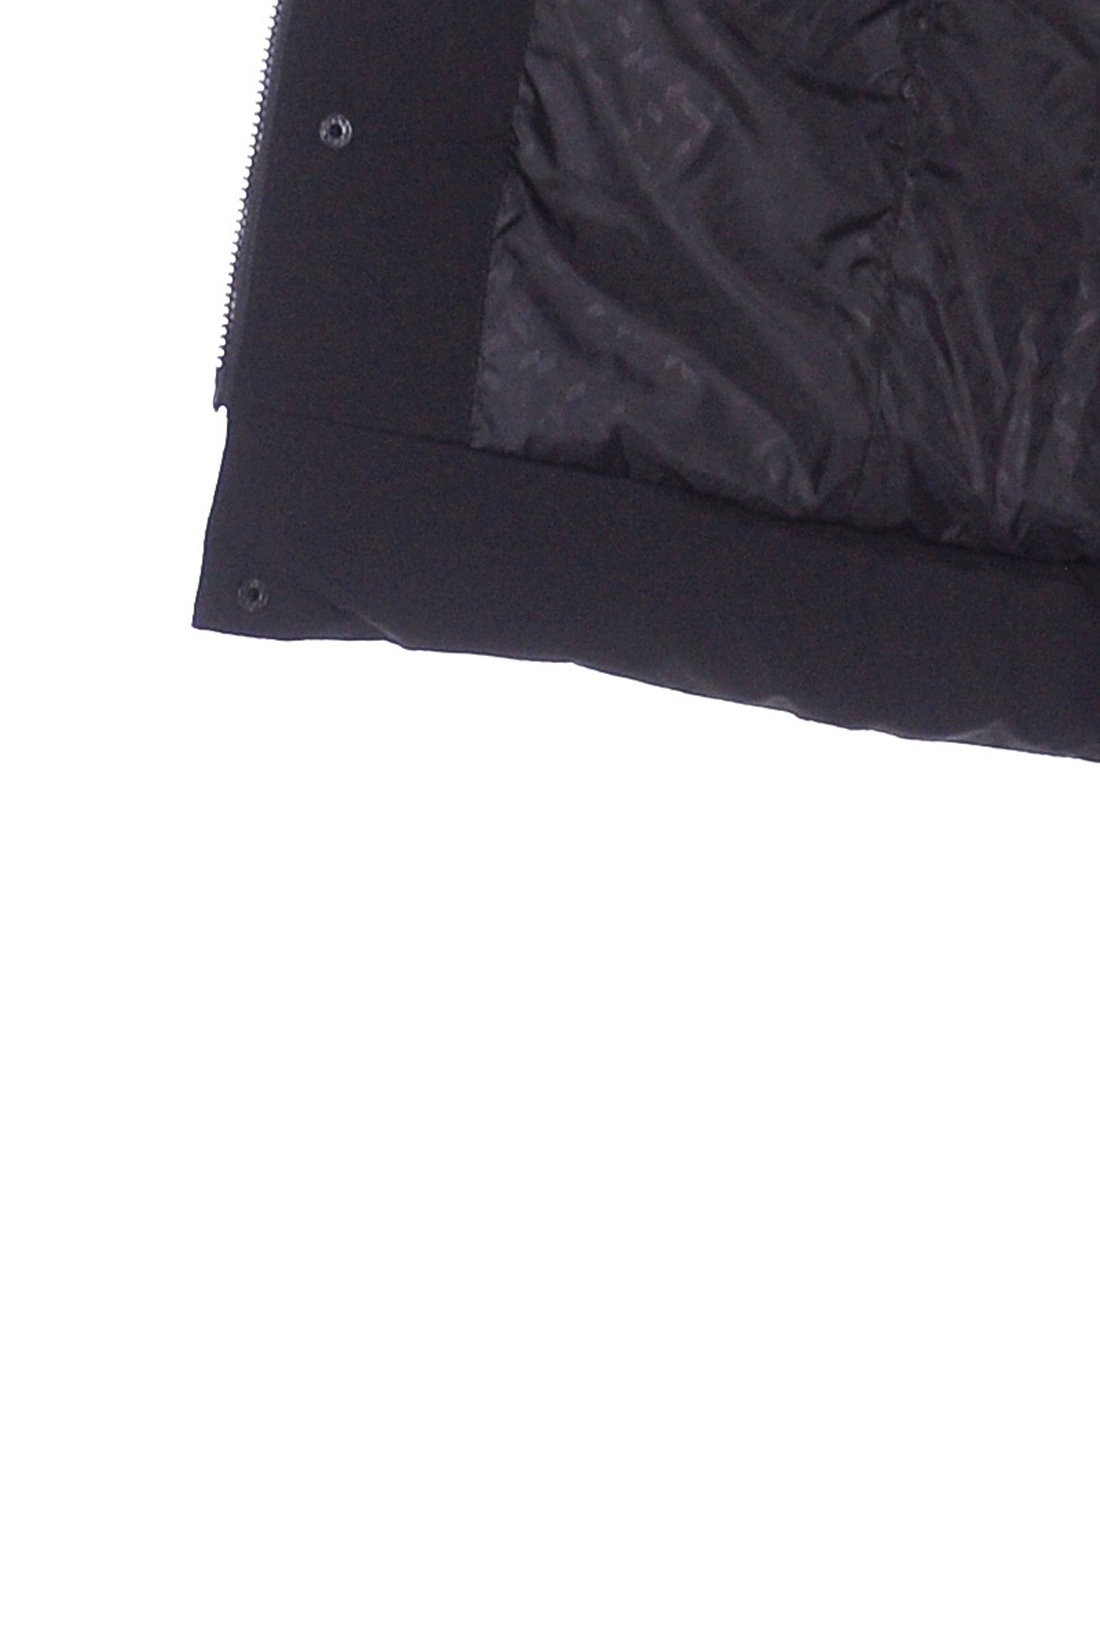 Пуховик с вставками из экокожи (арт. baon B509559), размер XL, цвет черный Пуховик с вставками из экокожи (арт. baon B509559) - фото 3